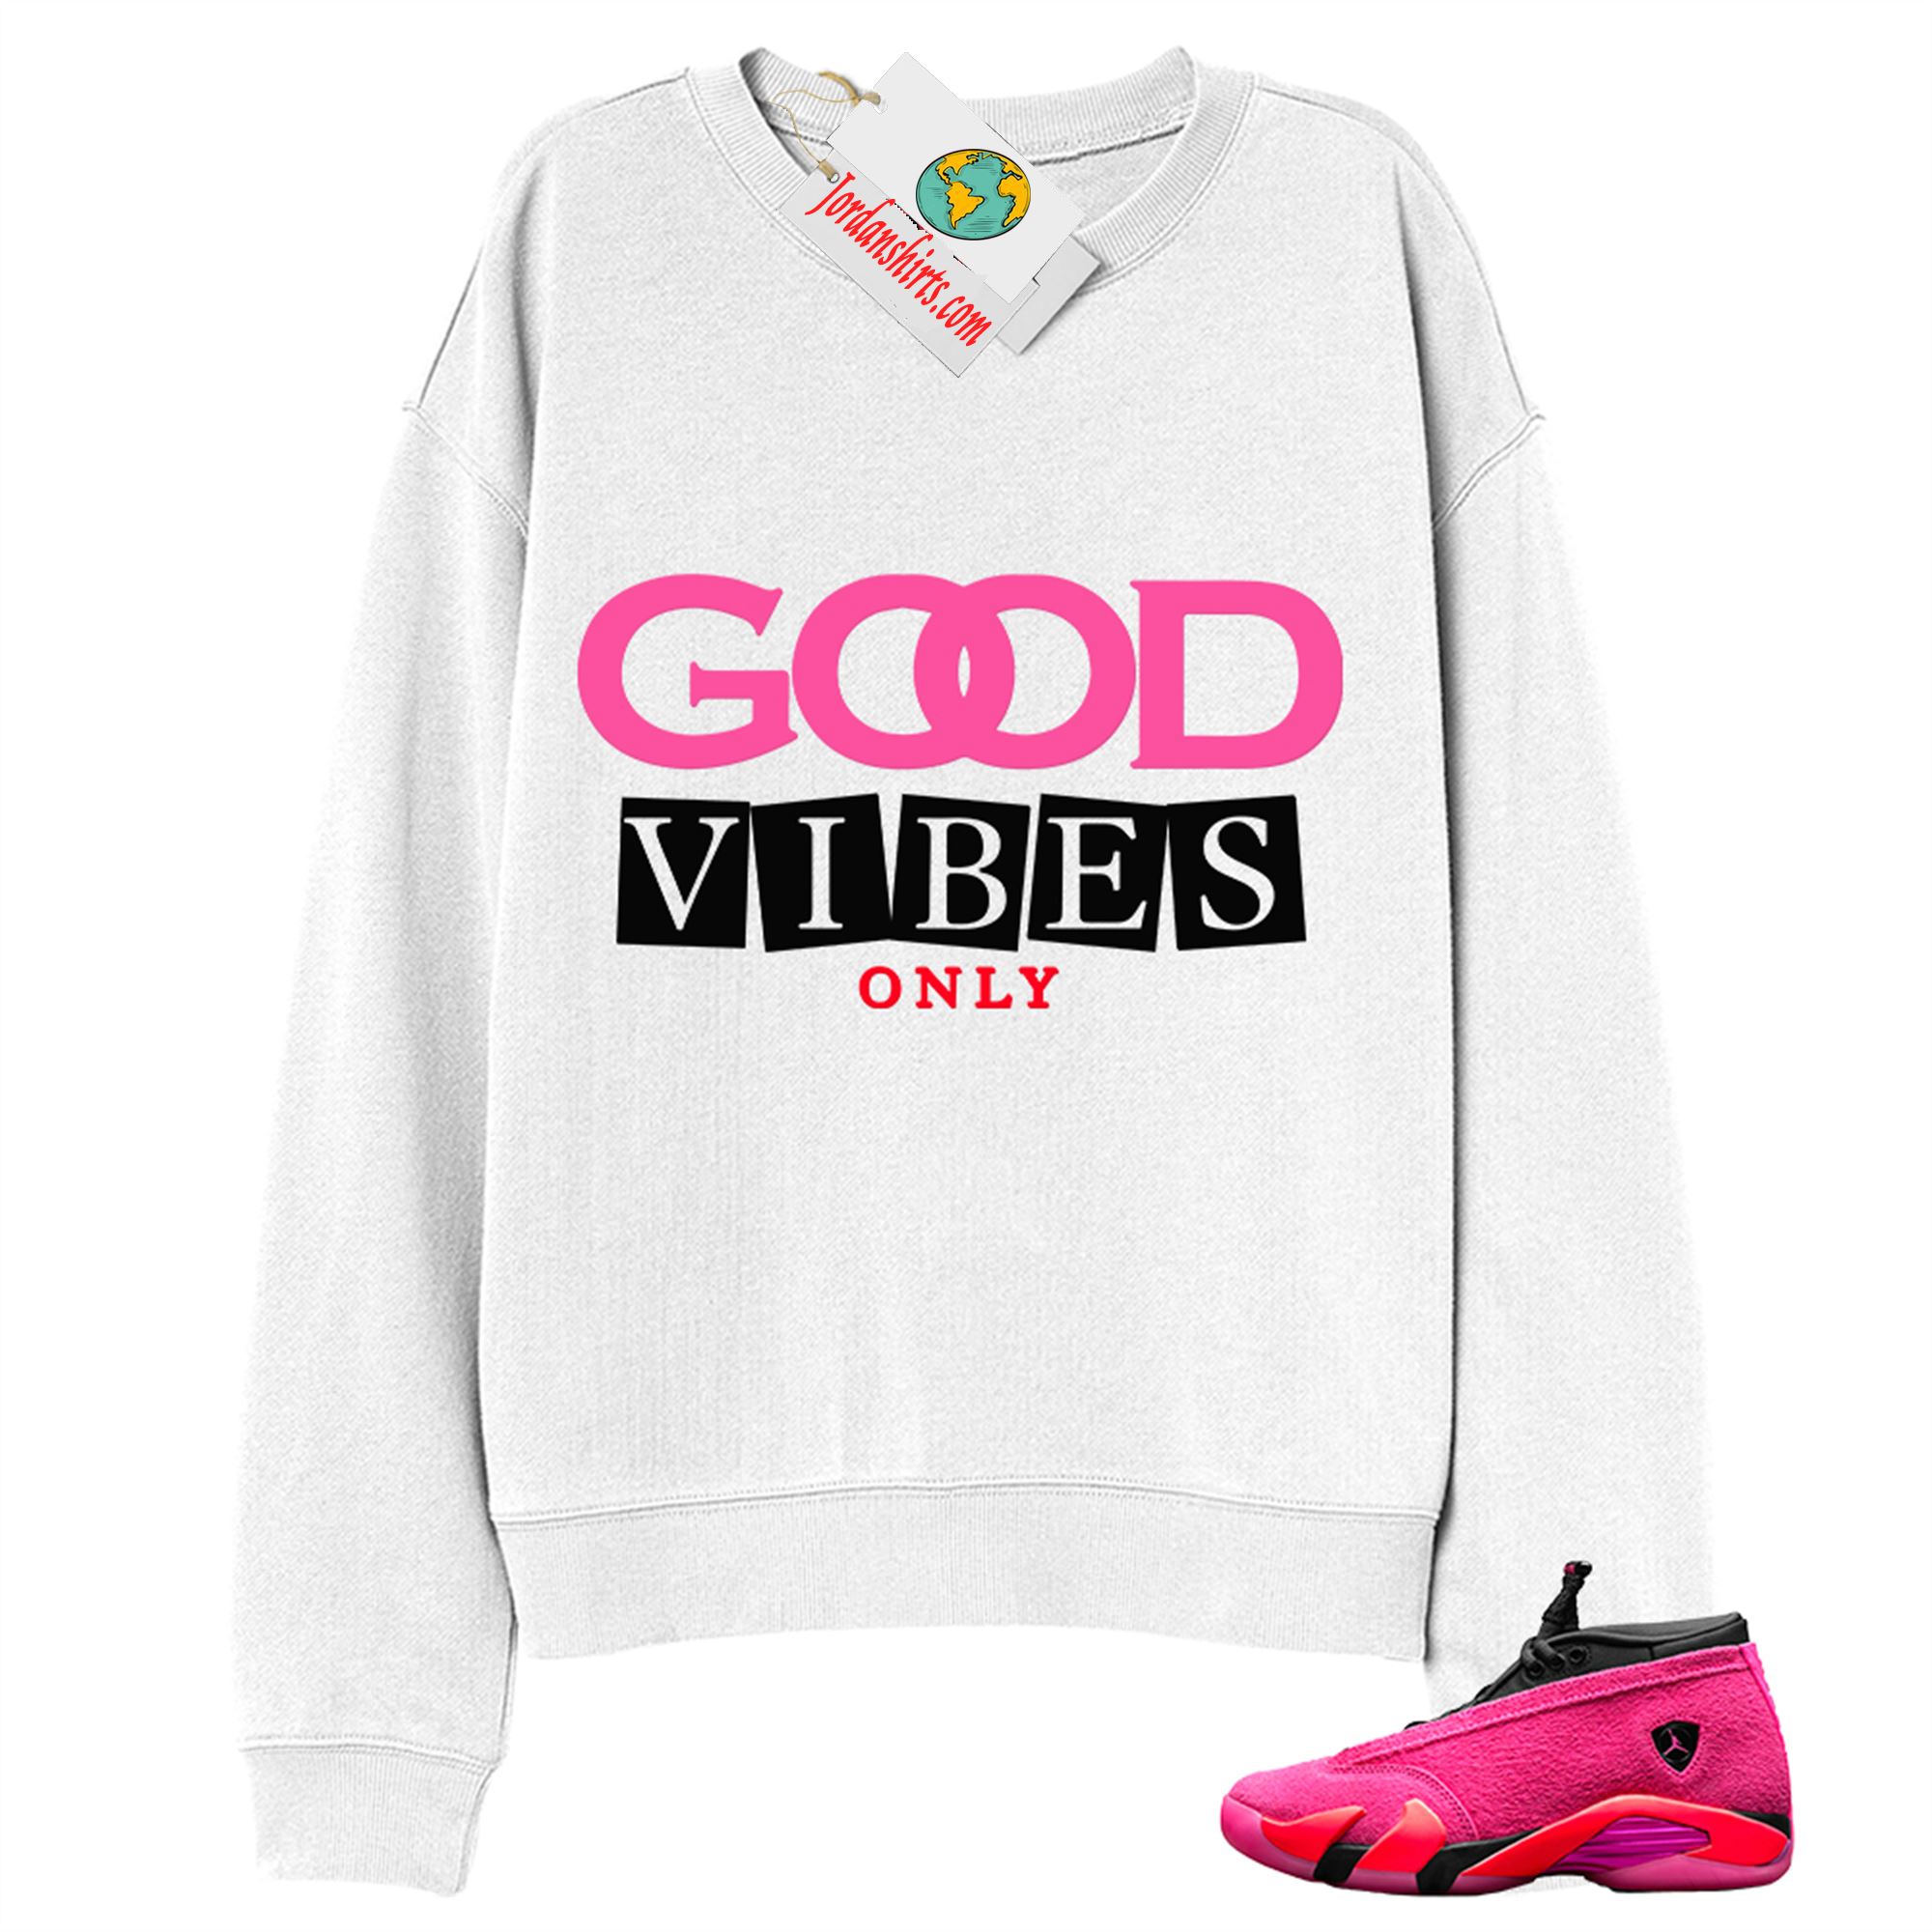 Jordan 14 Sweatshirt, Good Vibes Only White Sweatshirt Air Jordan 14 Wmns Shocking Pink 14s Plus Size Up To 5xl